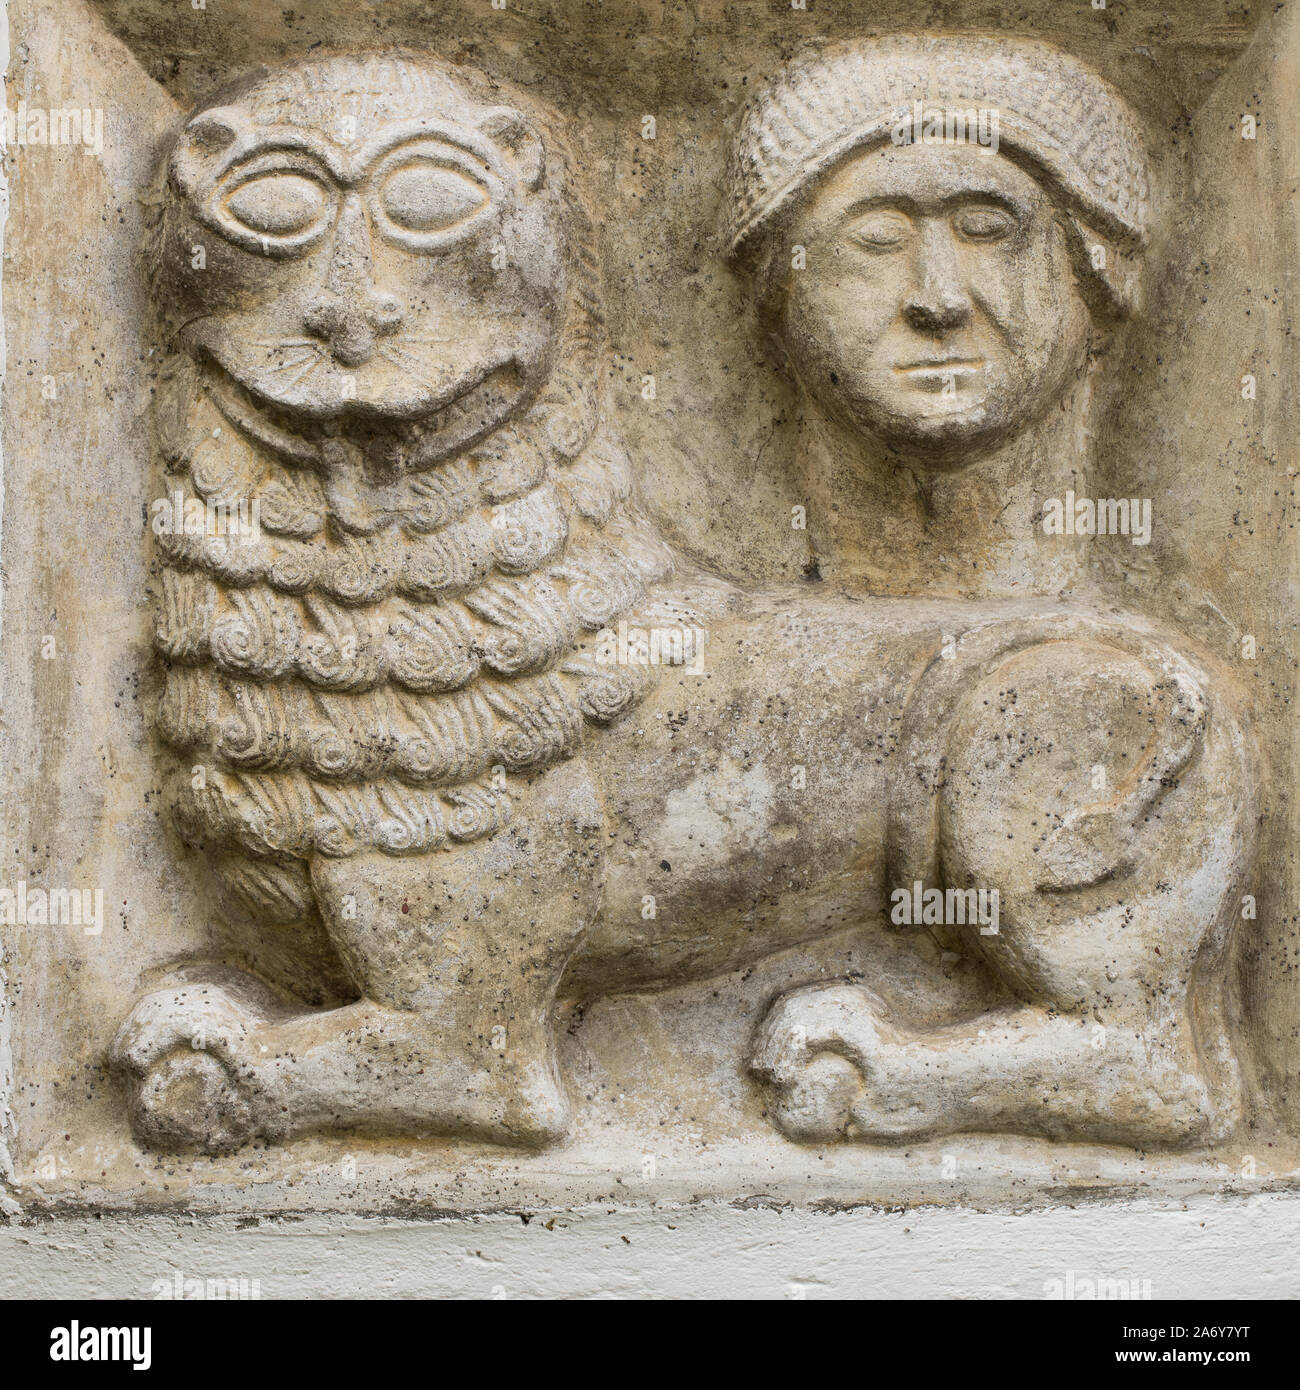 Gréco-romaine antique de secours lion mythique et tête humaine construire dans le mur Banque D'Images